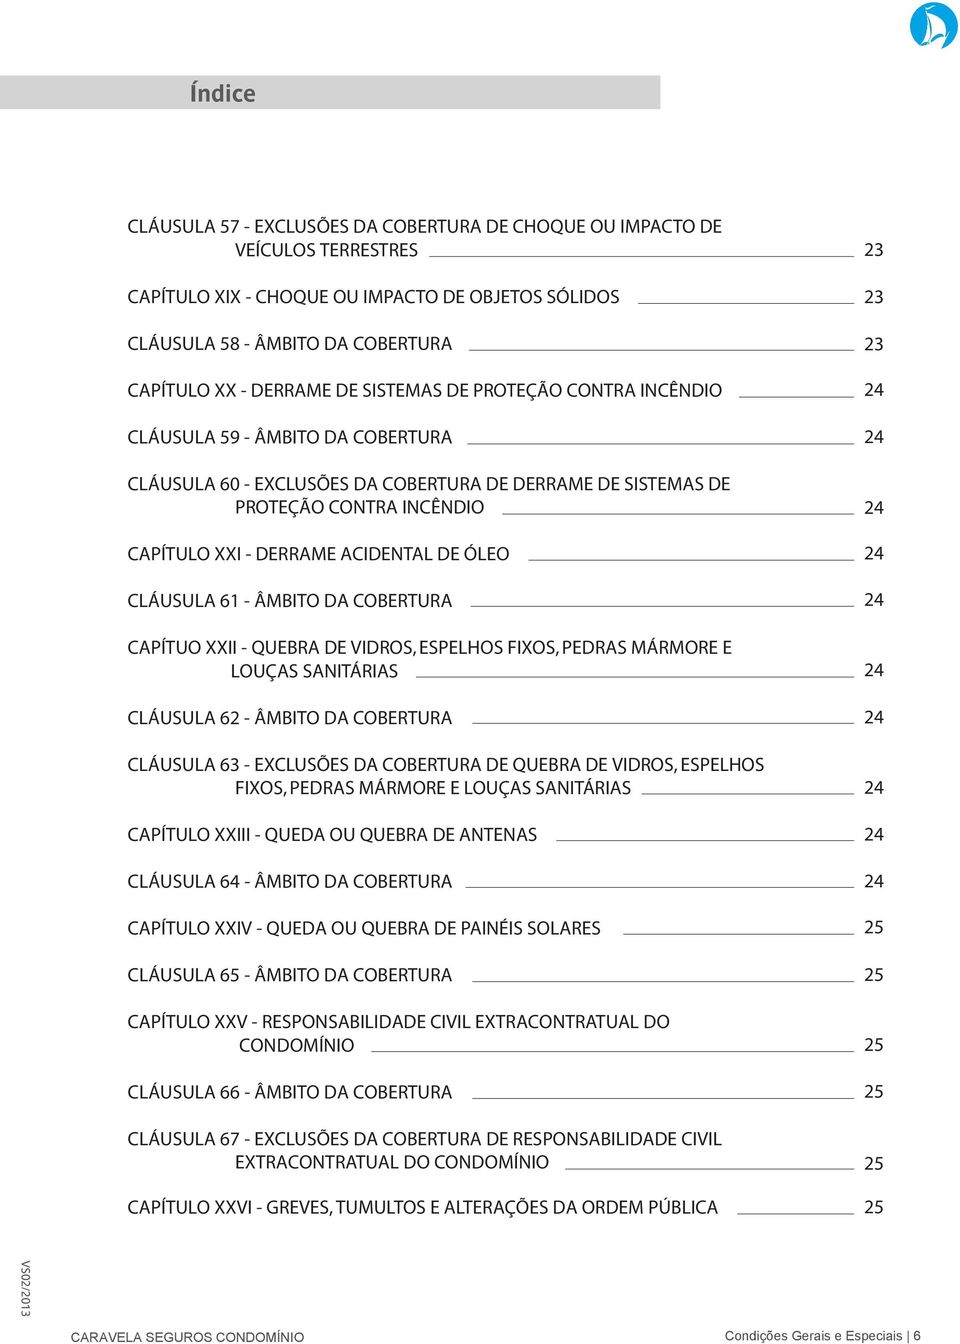 VIDROS, ESPELHOS FIXOS, PEDRAS MÁRMORE E LOUÇAS SANITÁRIAS CLÁUSULA 62 - CLÁUSULA 63 - EXCLUSÕES DA COBERTURA DE QUEBRA DE VIDROS, ESPELHOS FIXOS, PEDRAS MÁRMORE E LOUÇAS SANITÁRIAS CAPÍTULO XXIII -